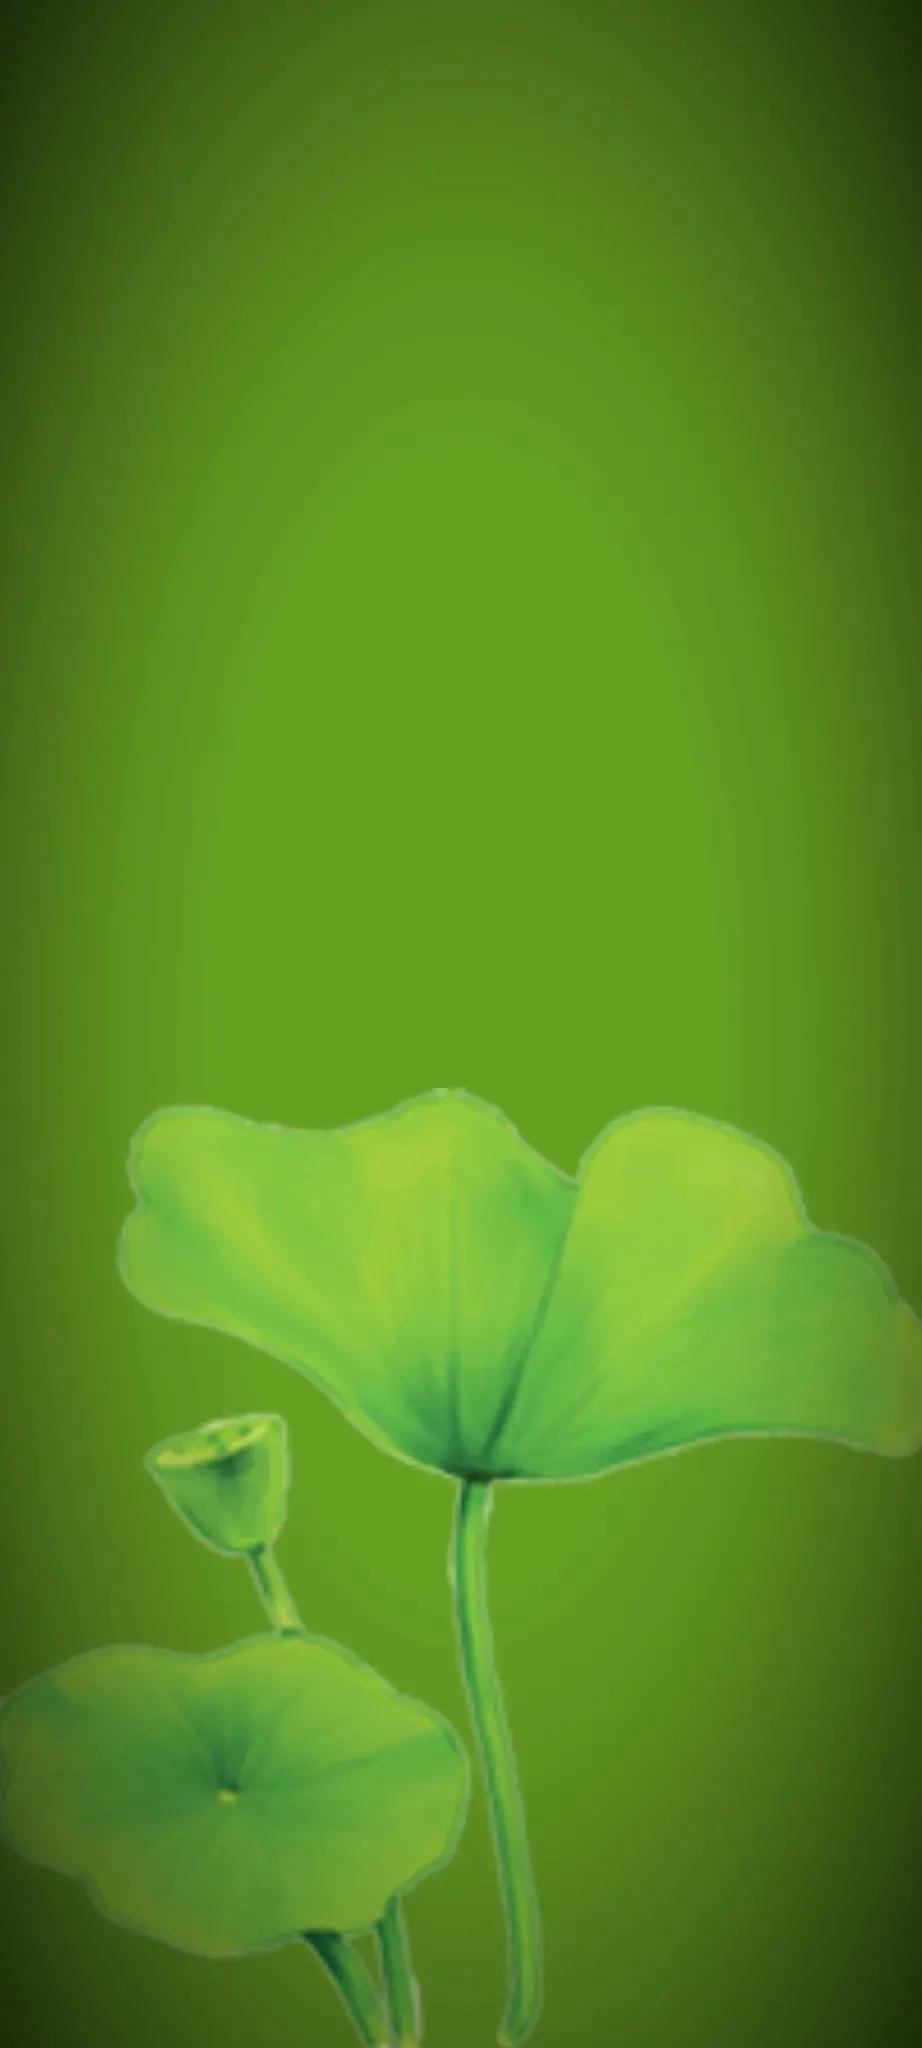 苹果手机绿色护眼壁纸图片